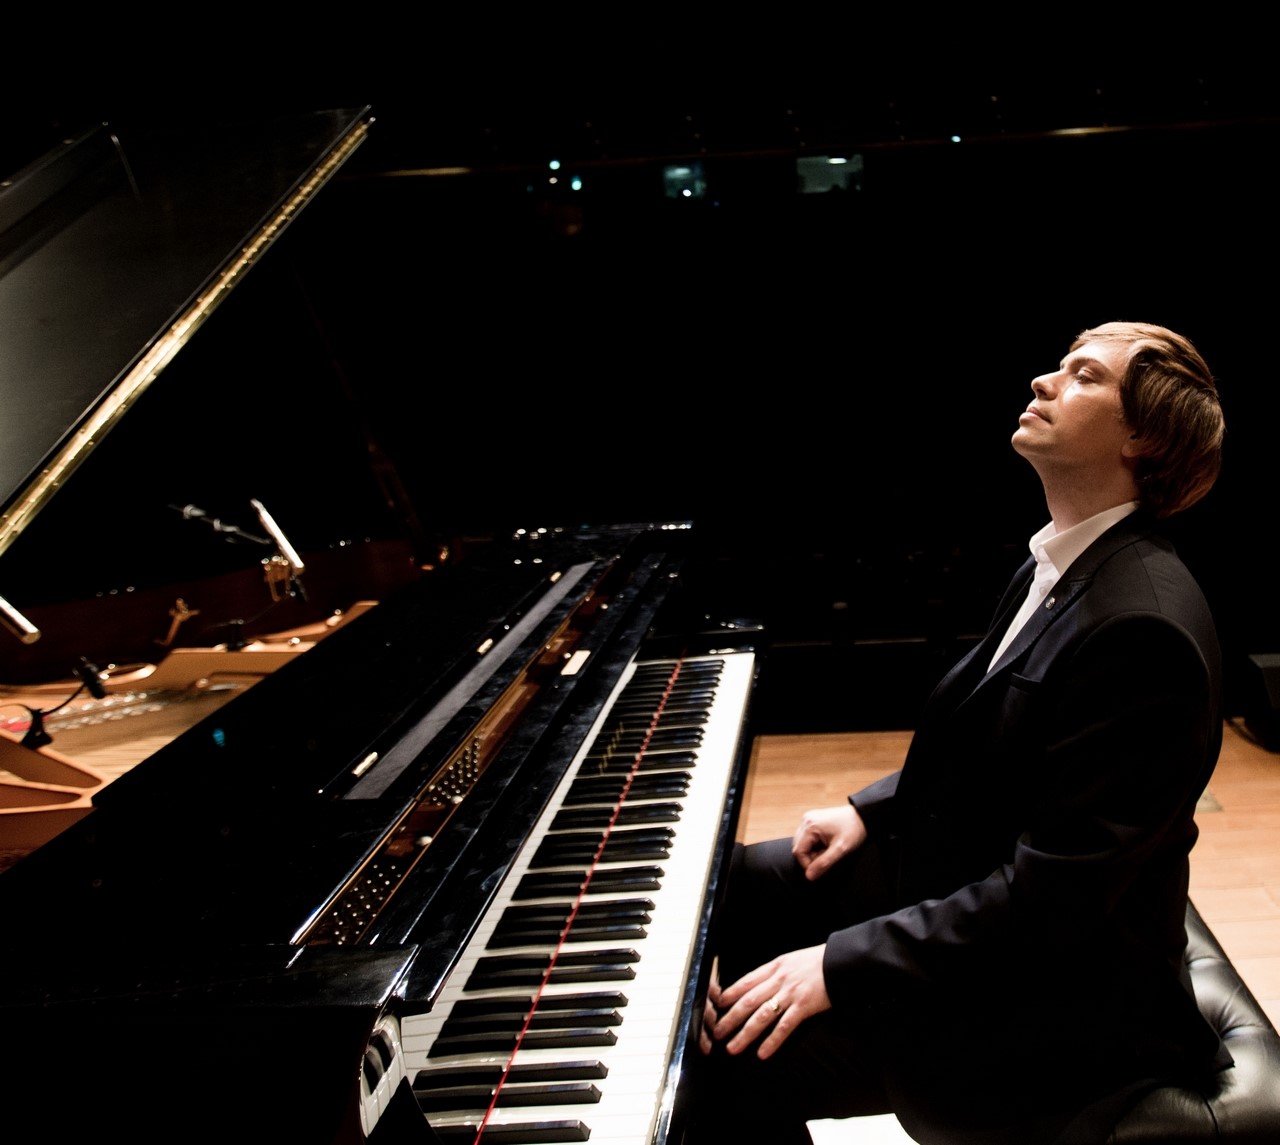 المُلحِّن وعازف البيانو اللبناني ستيف بركات بجولة حول العالم من وطنه الأم إلى قاعة كارنيجي في مدينة نيويورك